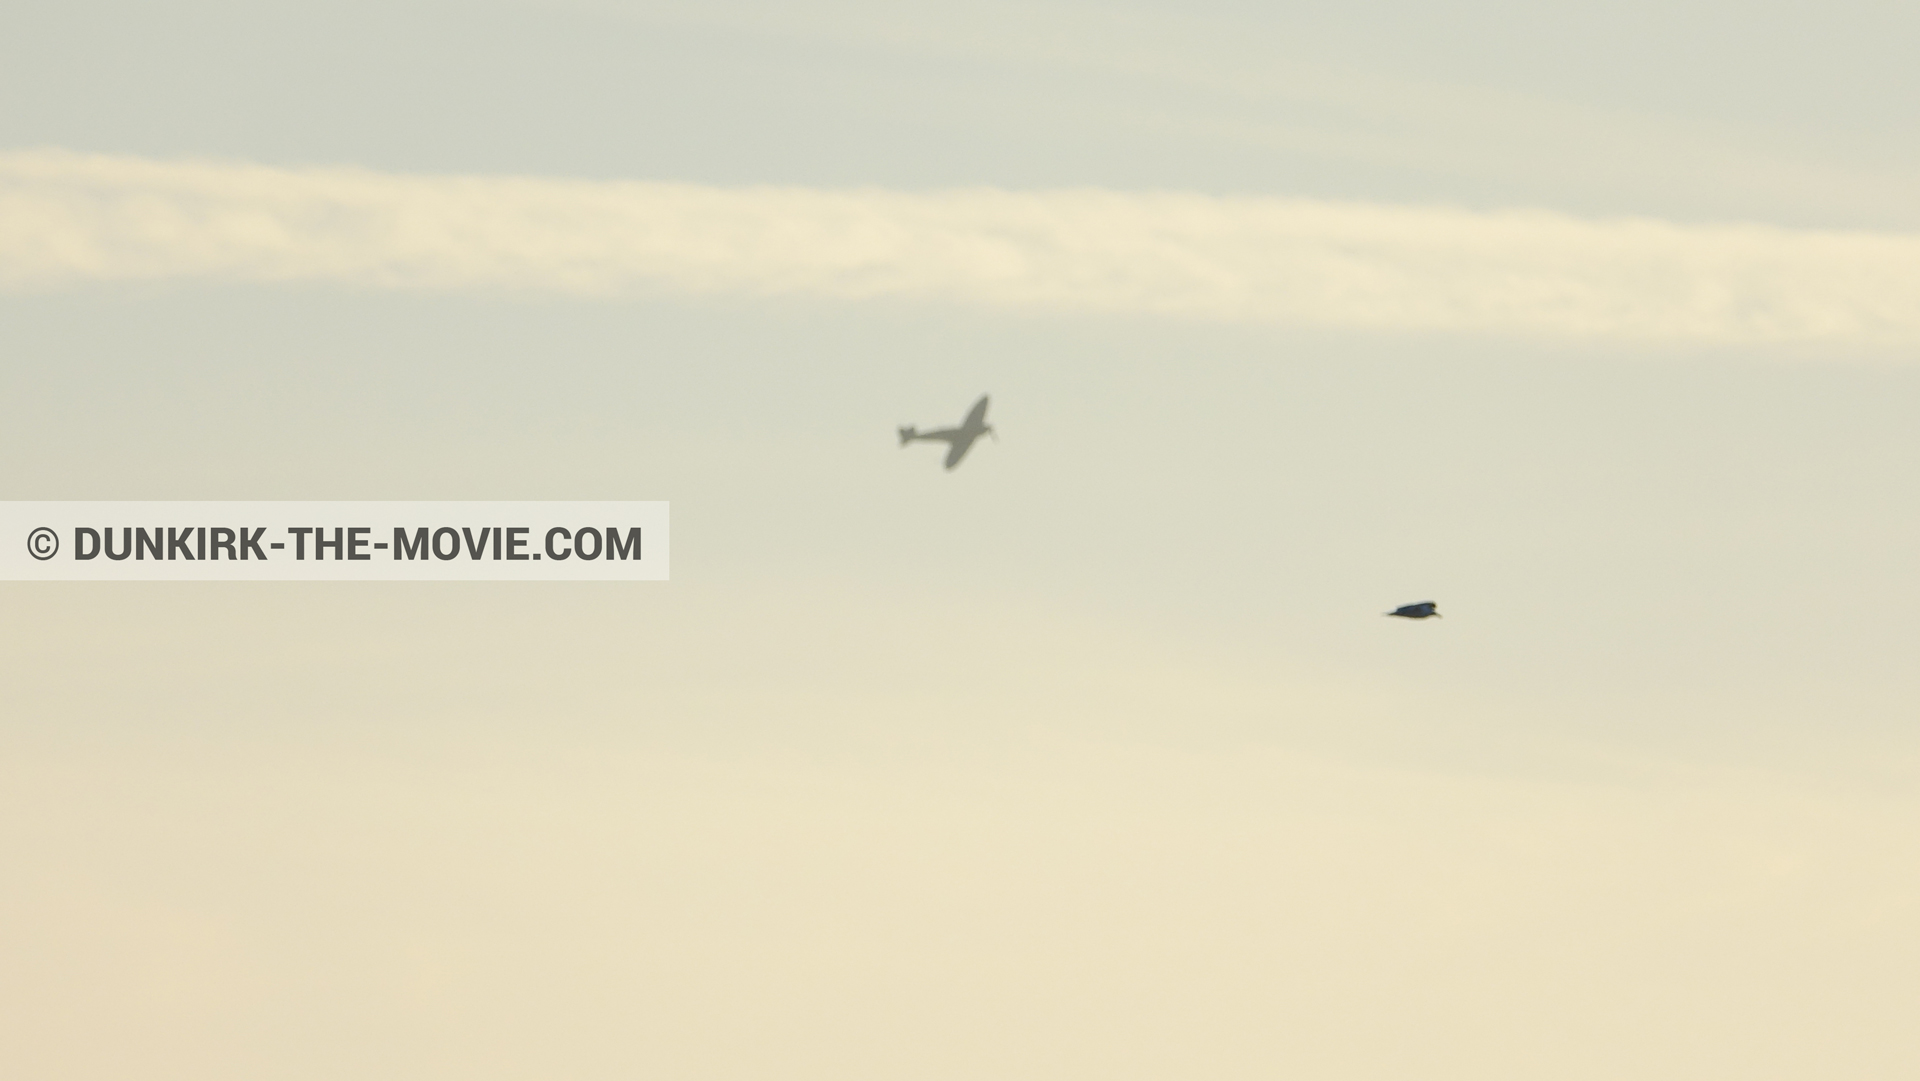 Photo avec avion, ciel orangé,  des dessous du Film Dunkerque de Nolan